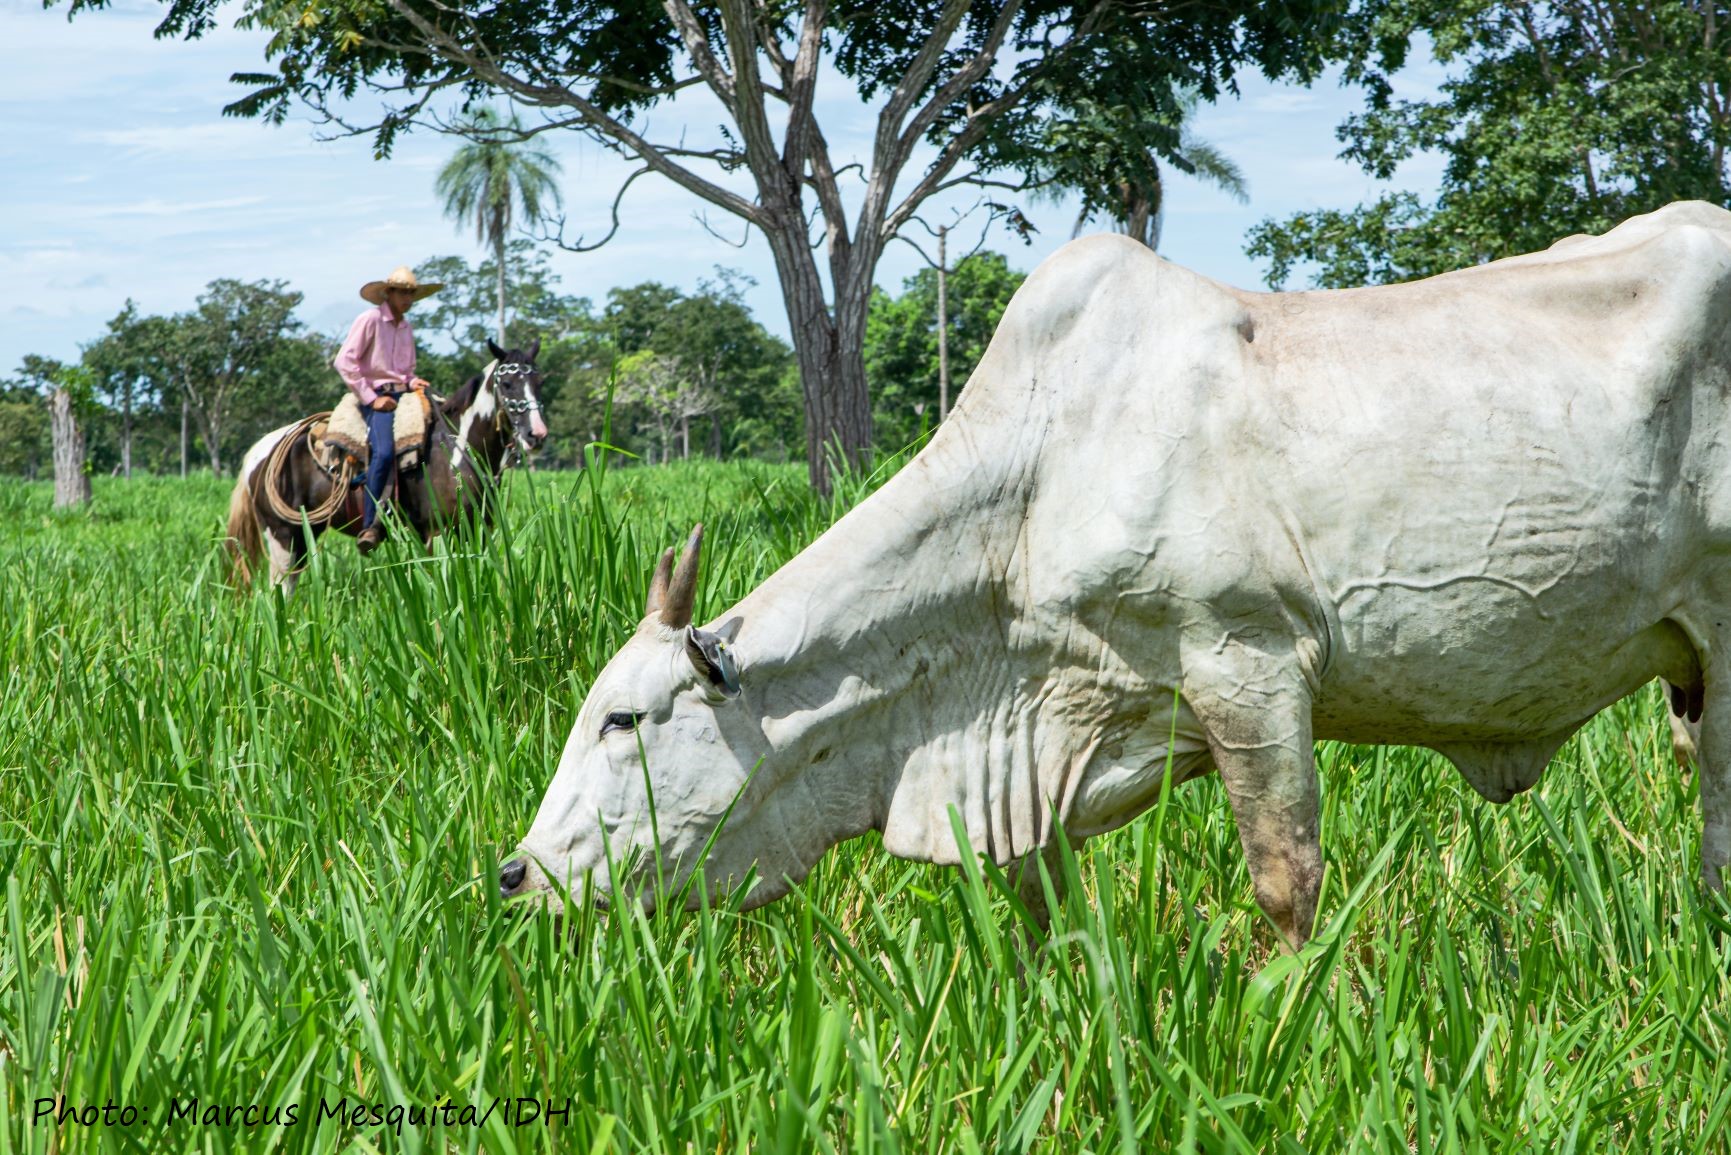 Mato Grosso州的牛农夫